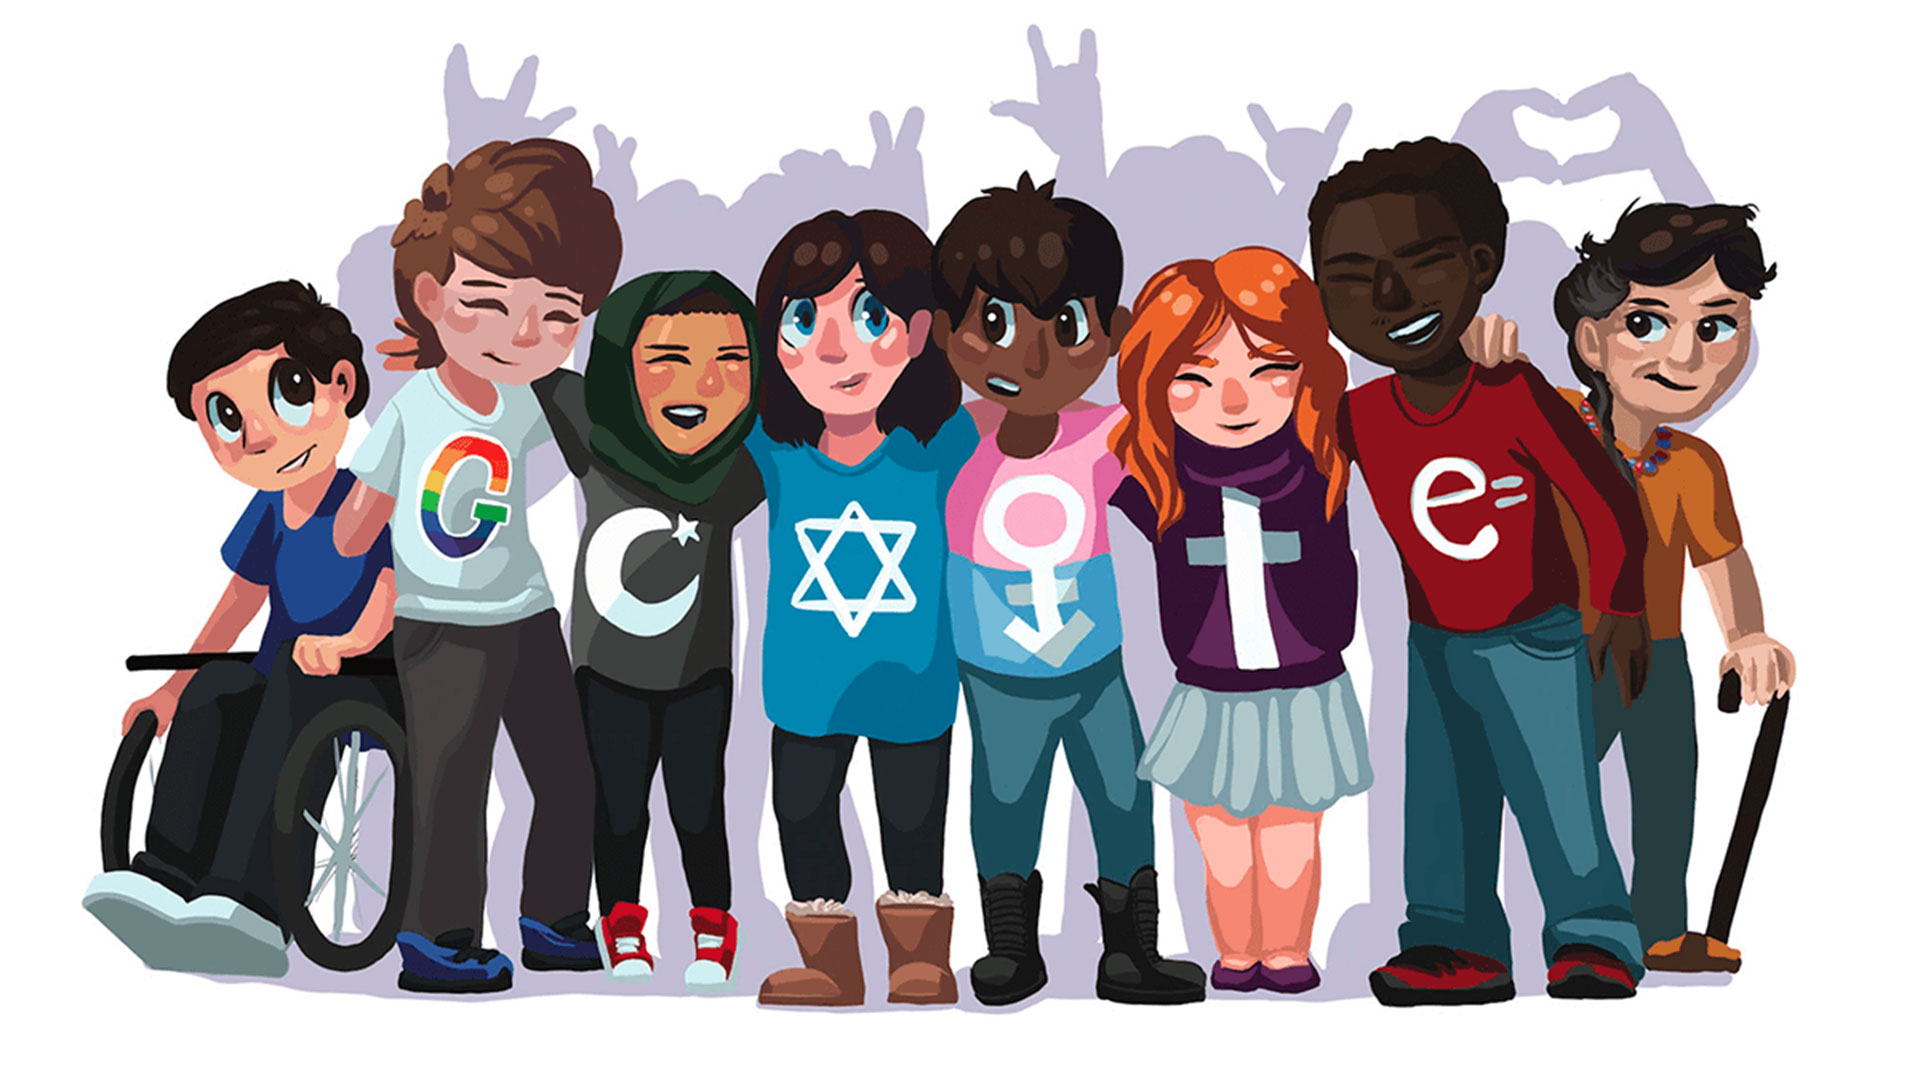 El futuro es la inclusión: una niña de 15 años lo dibuja en ‘Doodle 4 Google’